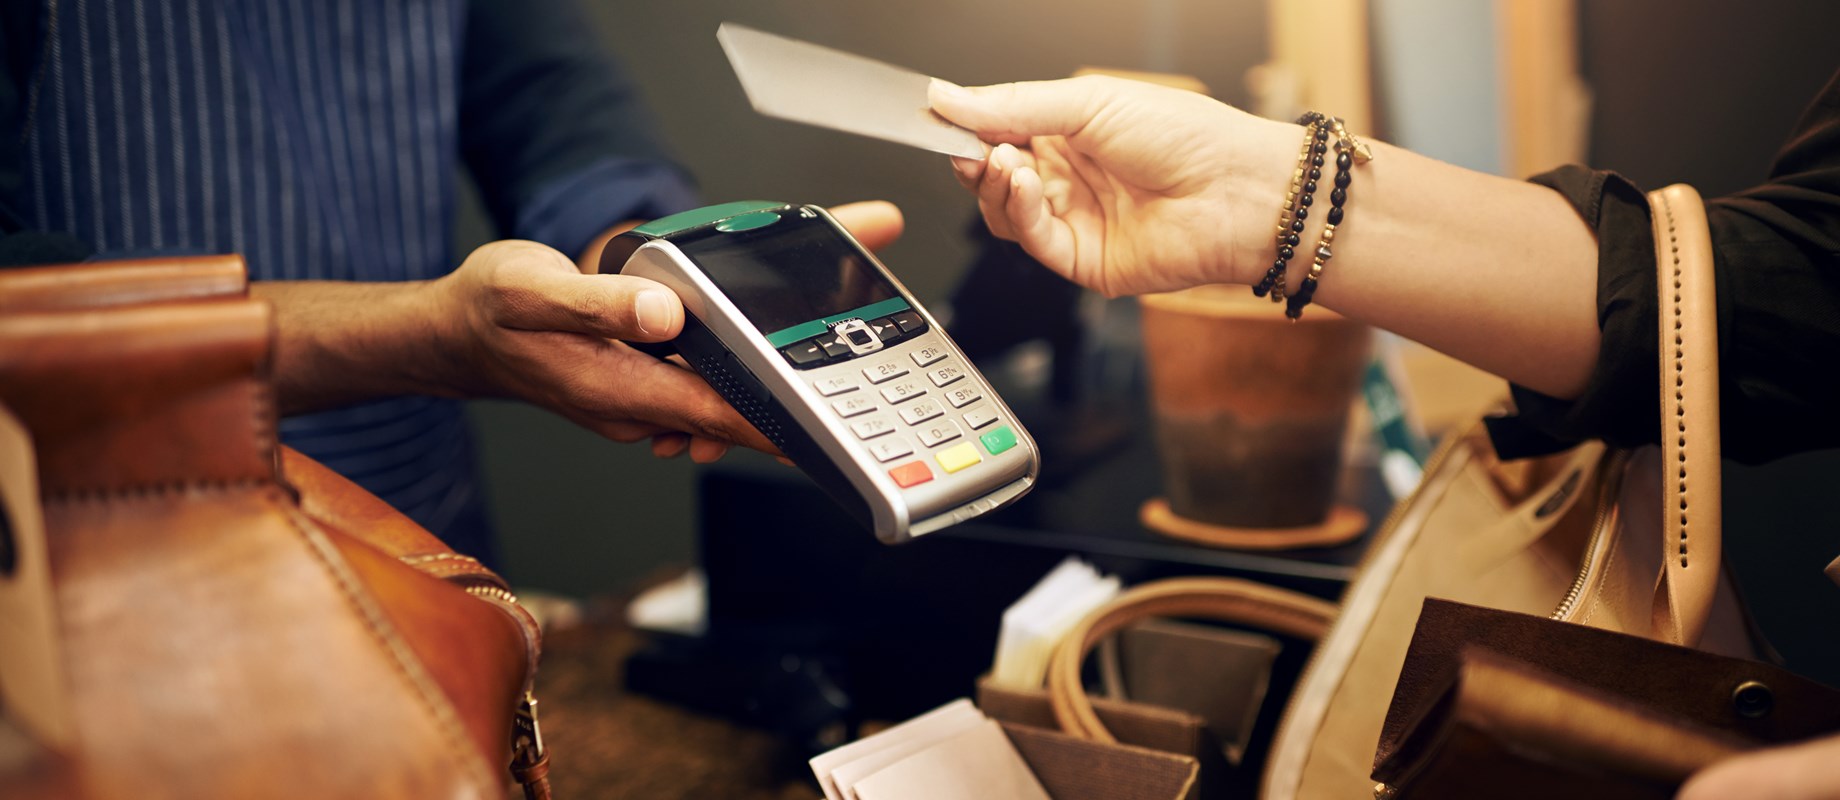 Comode, affidabili e contactless . Per gli acquisti e pagamenti scegli le carte di credito. Chiedi in filiale! 